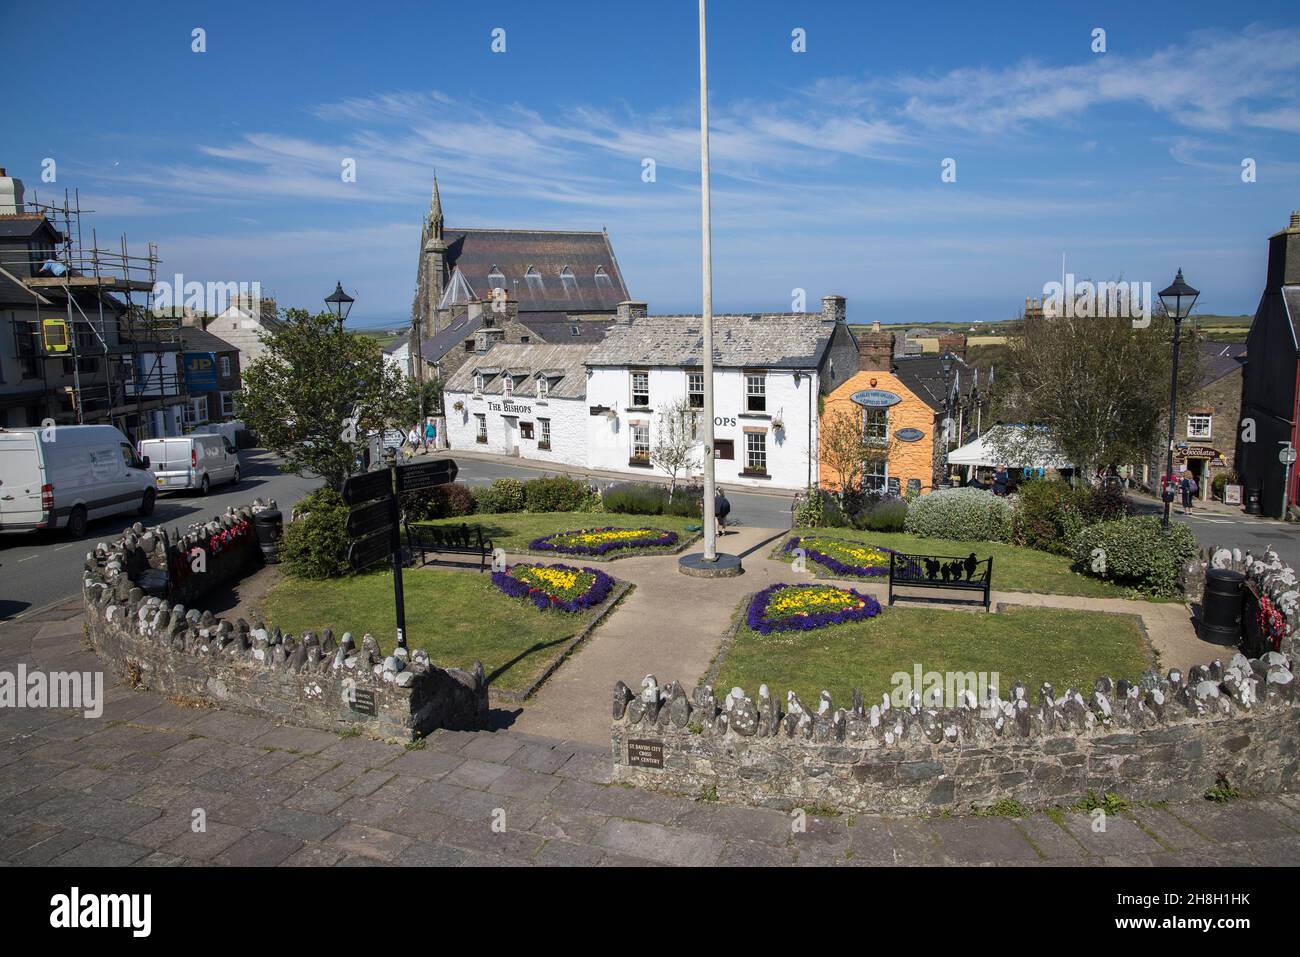 Public War Memorial Garden e posti a sedere nel centro città, St Davids, Pembrokeshire, Galles, Regno Unito Foto Stock